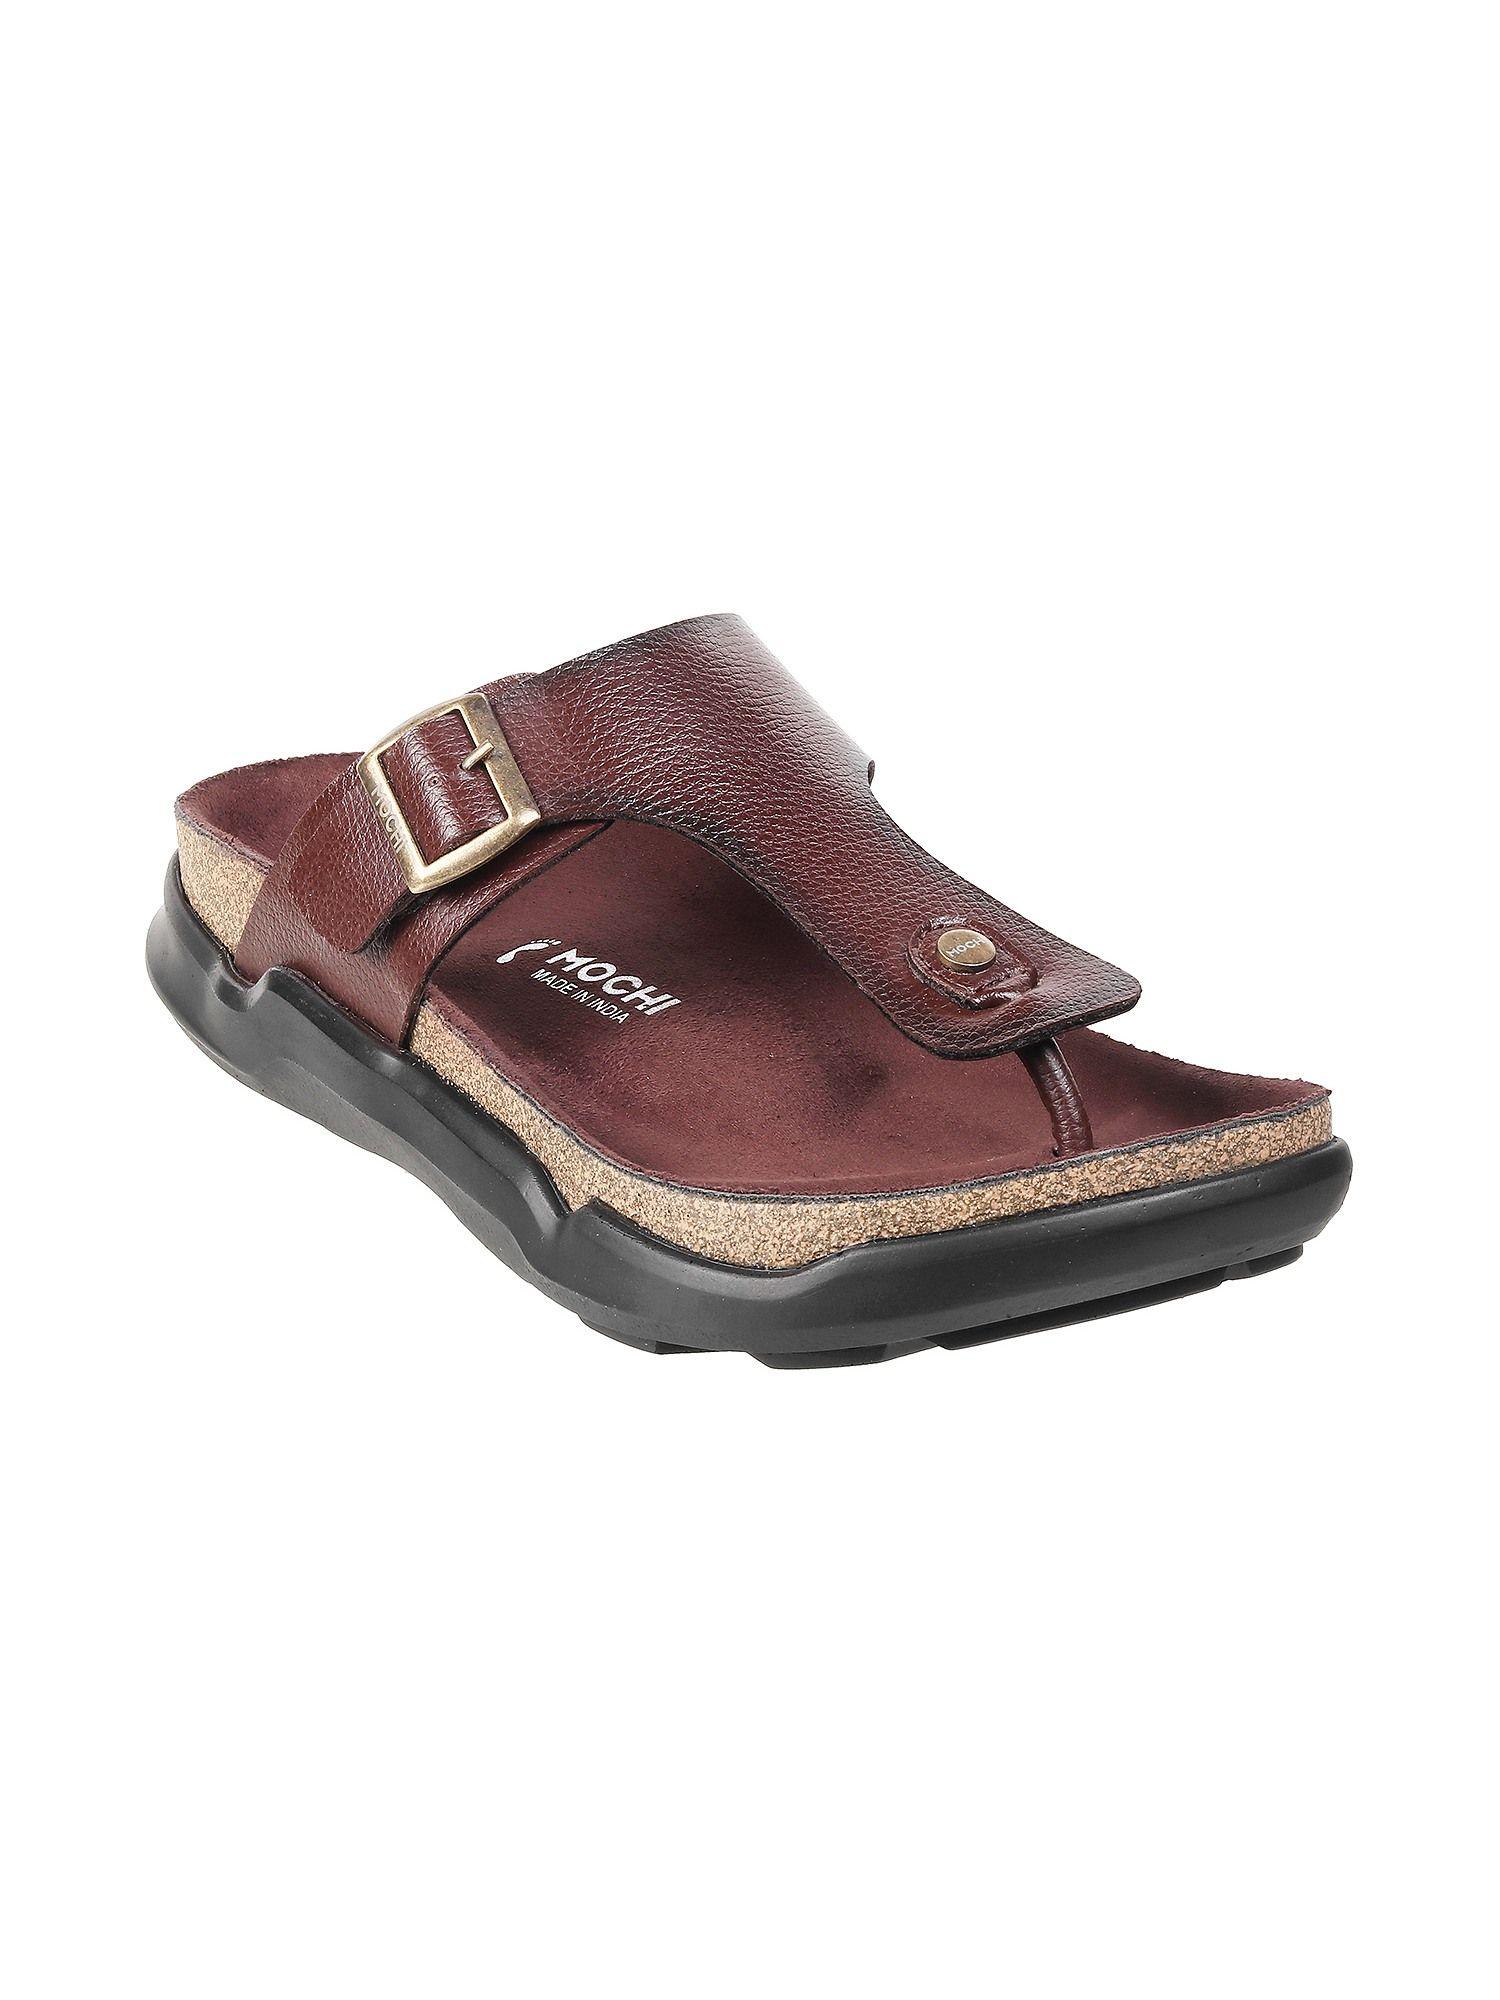 mens-brown-flat-chappalsmochi-textured-brown-sandals